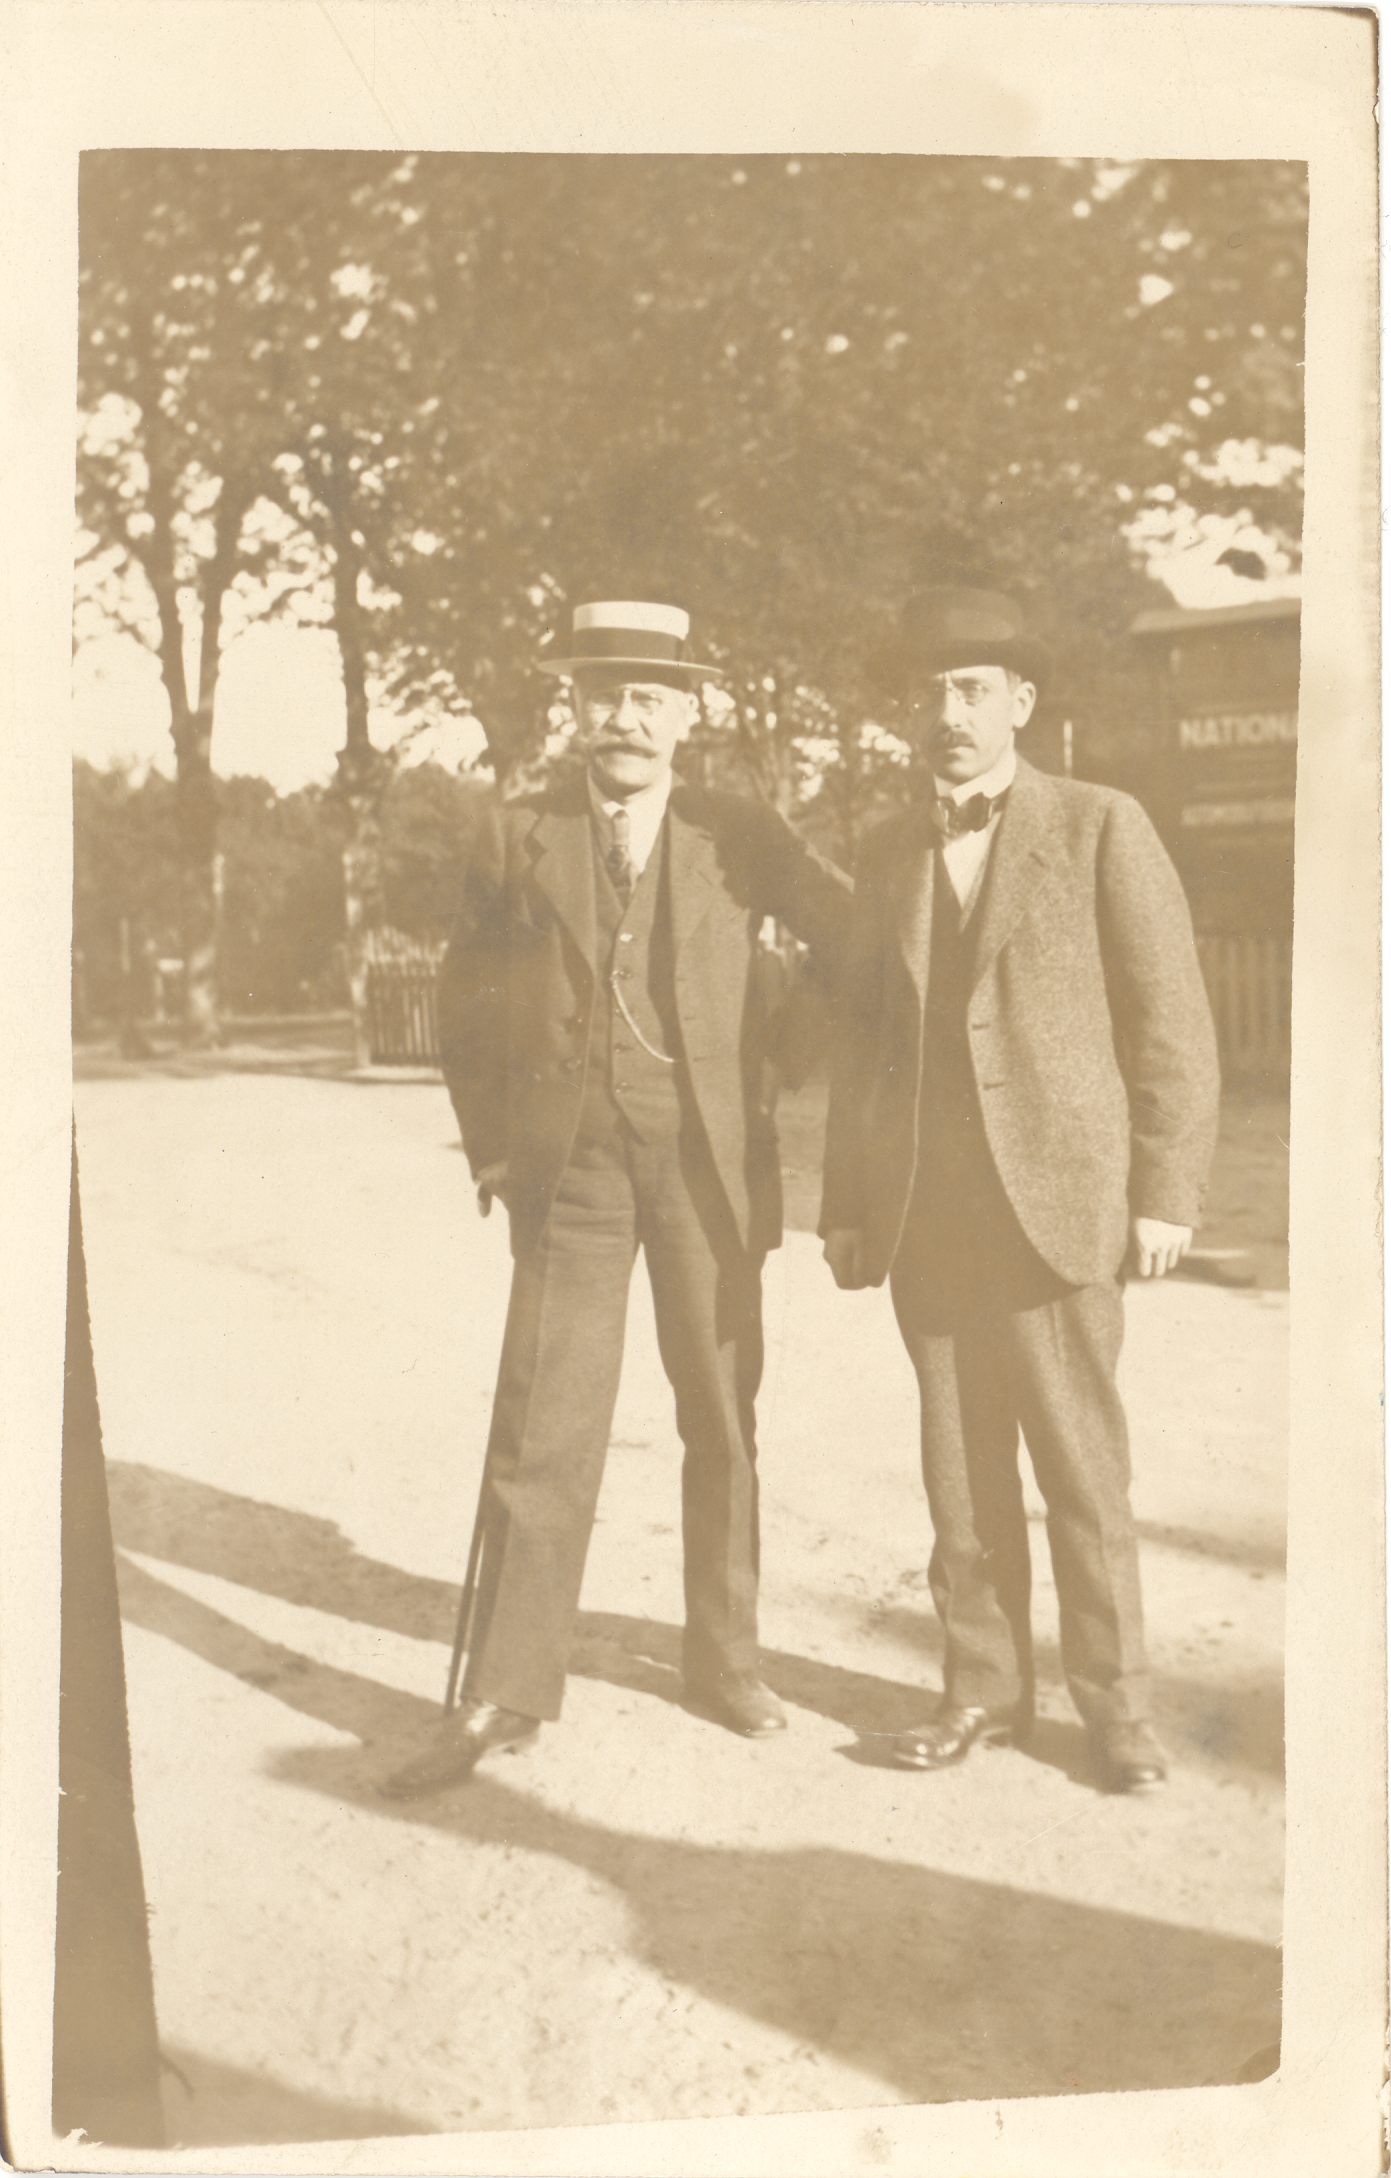 Vilde, Eduard and Gusatv Suits (best) in spring 1919 in Copenhagen